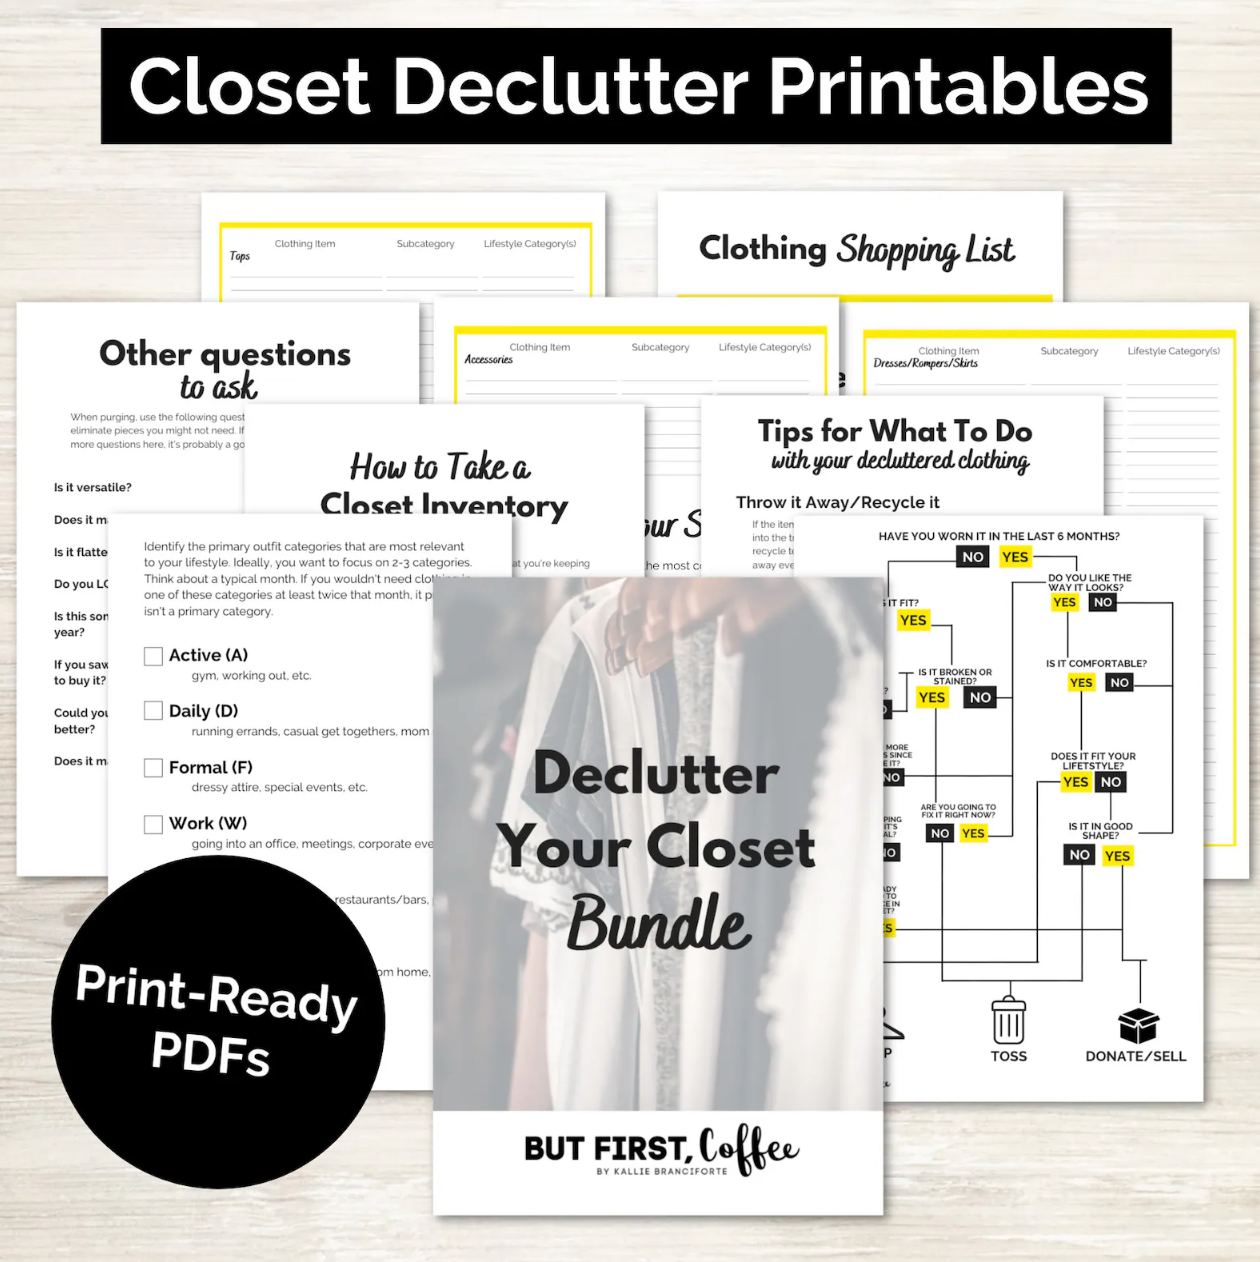 Closet Declutter Guide